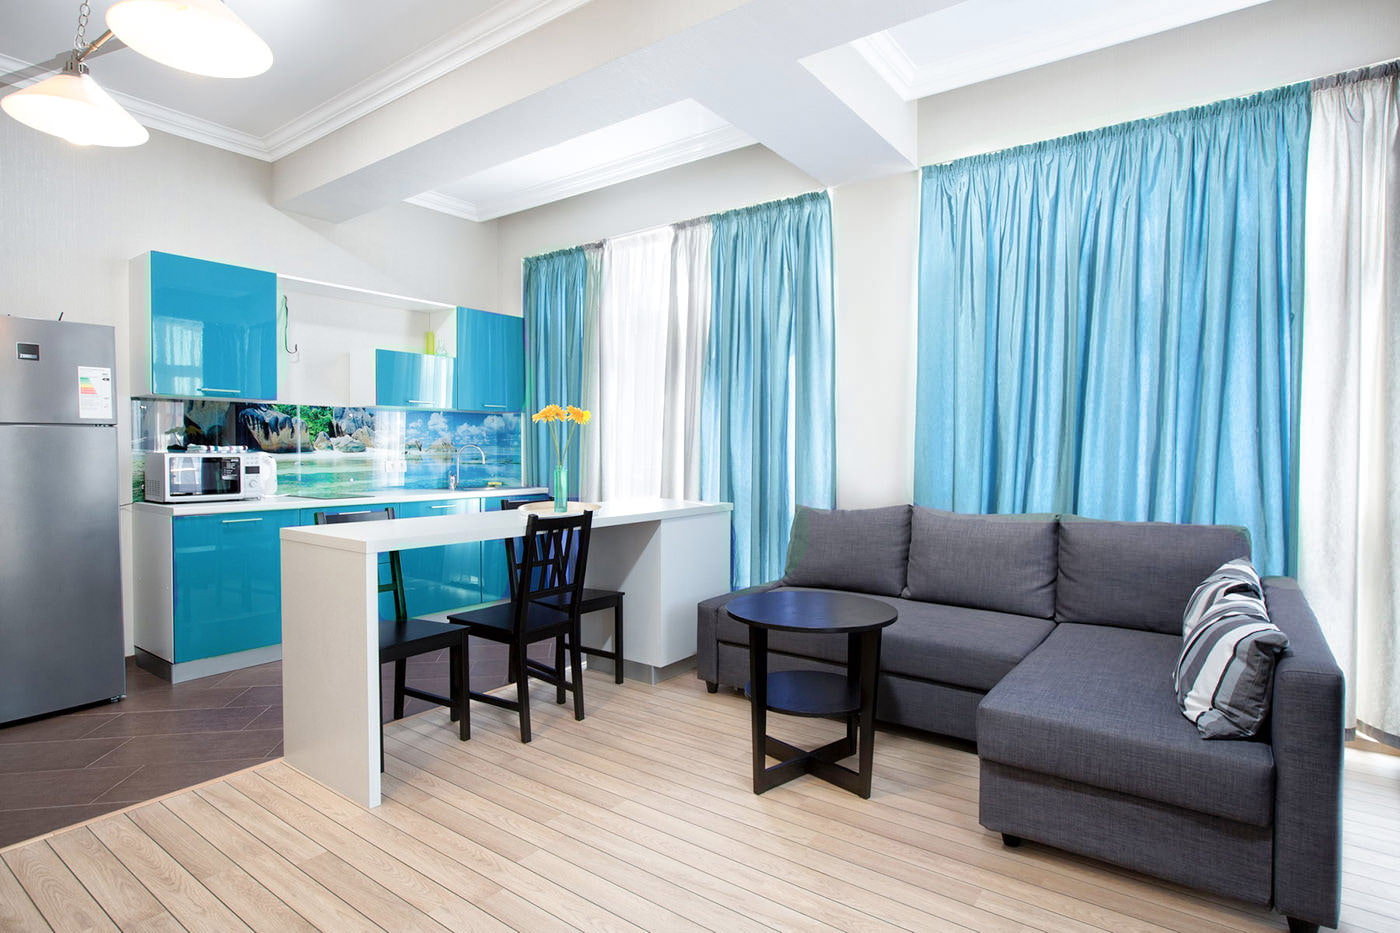 غرفة المعيشة بألوان زرقاء تصميم الأفكار